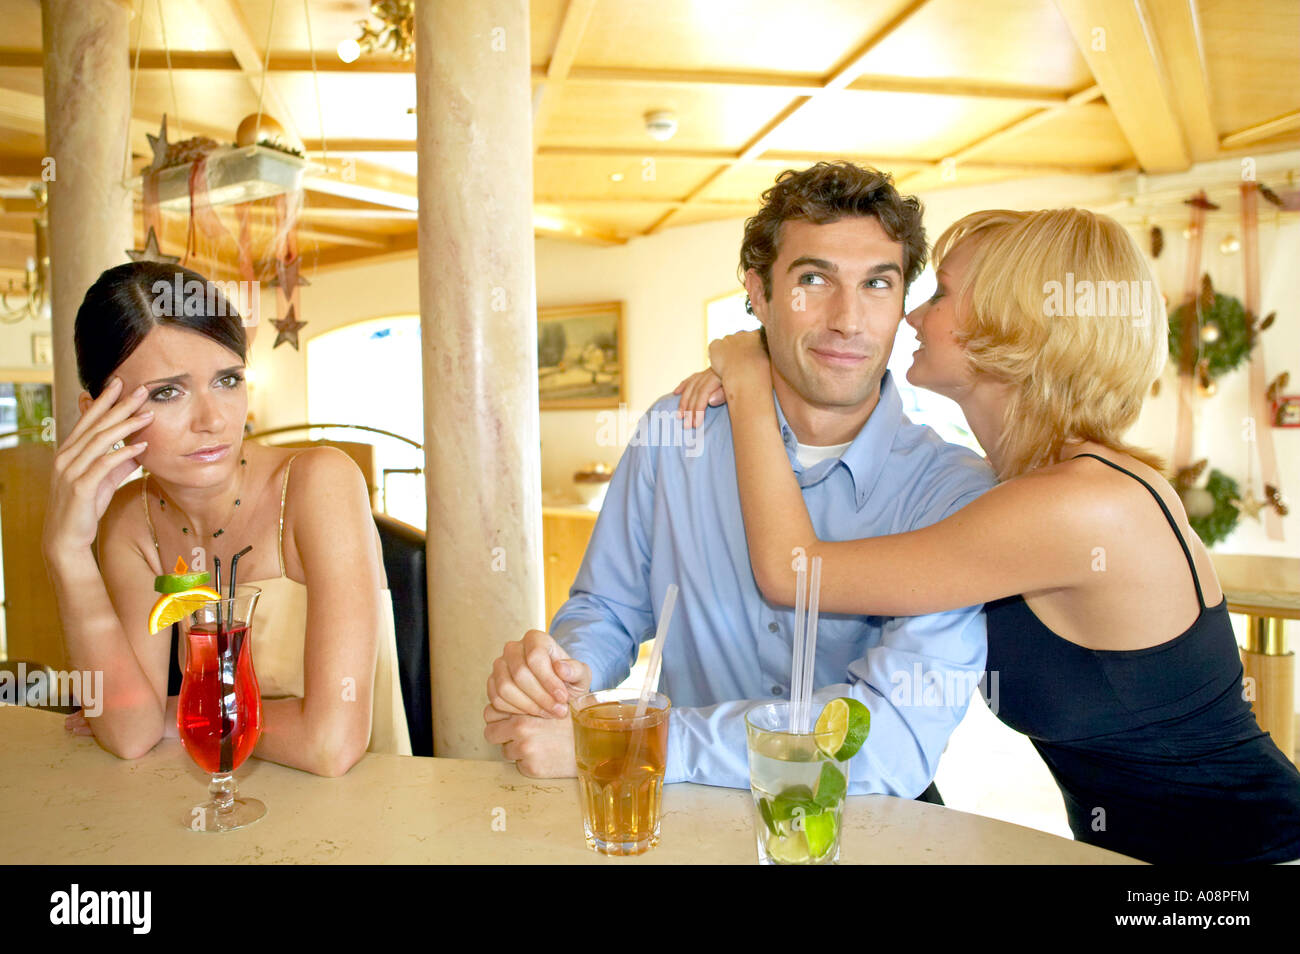 Mann flirtet mit zwei Frauen an der Hotelbar Eifersucht, Man flirting with two women at a hotel bar jealousy Stock Photo